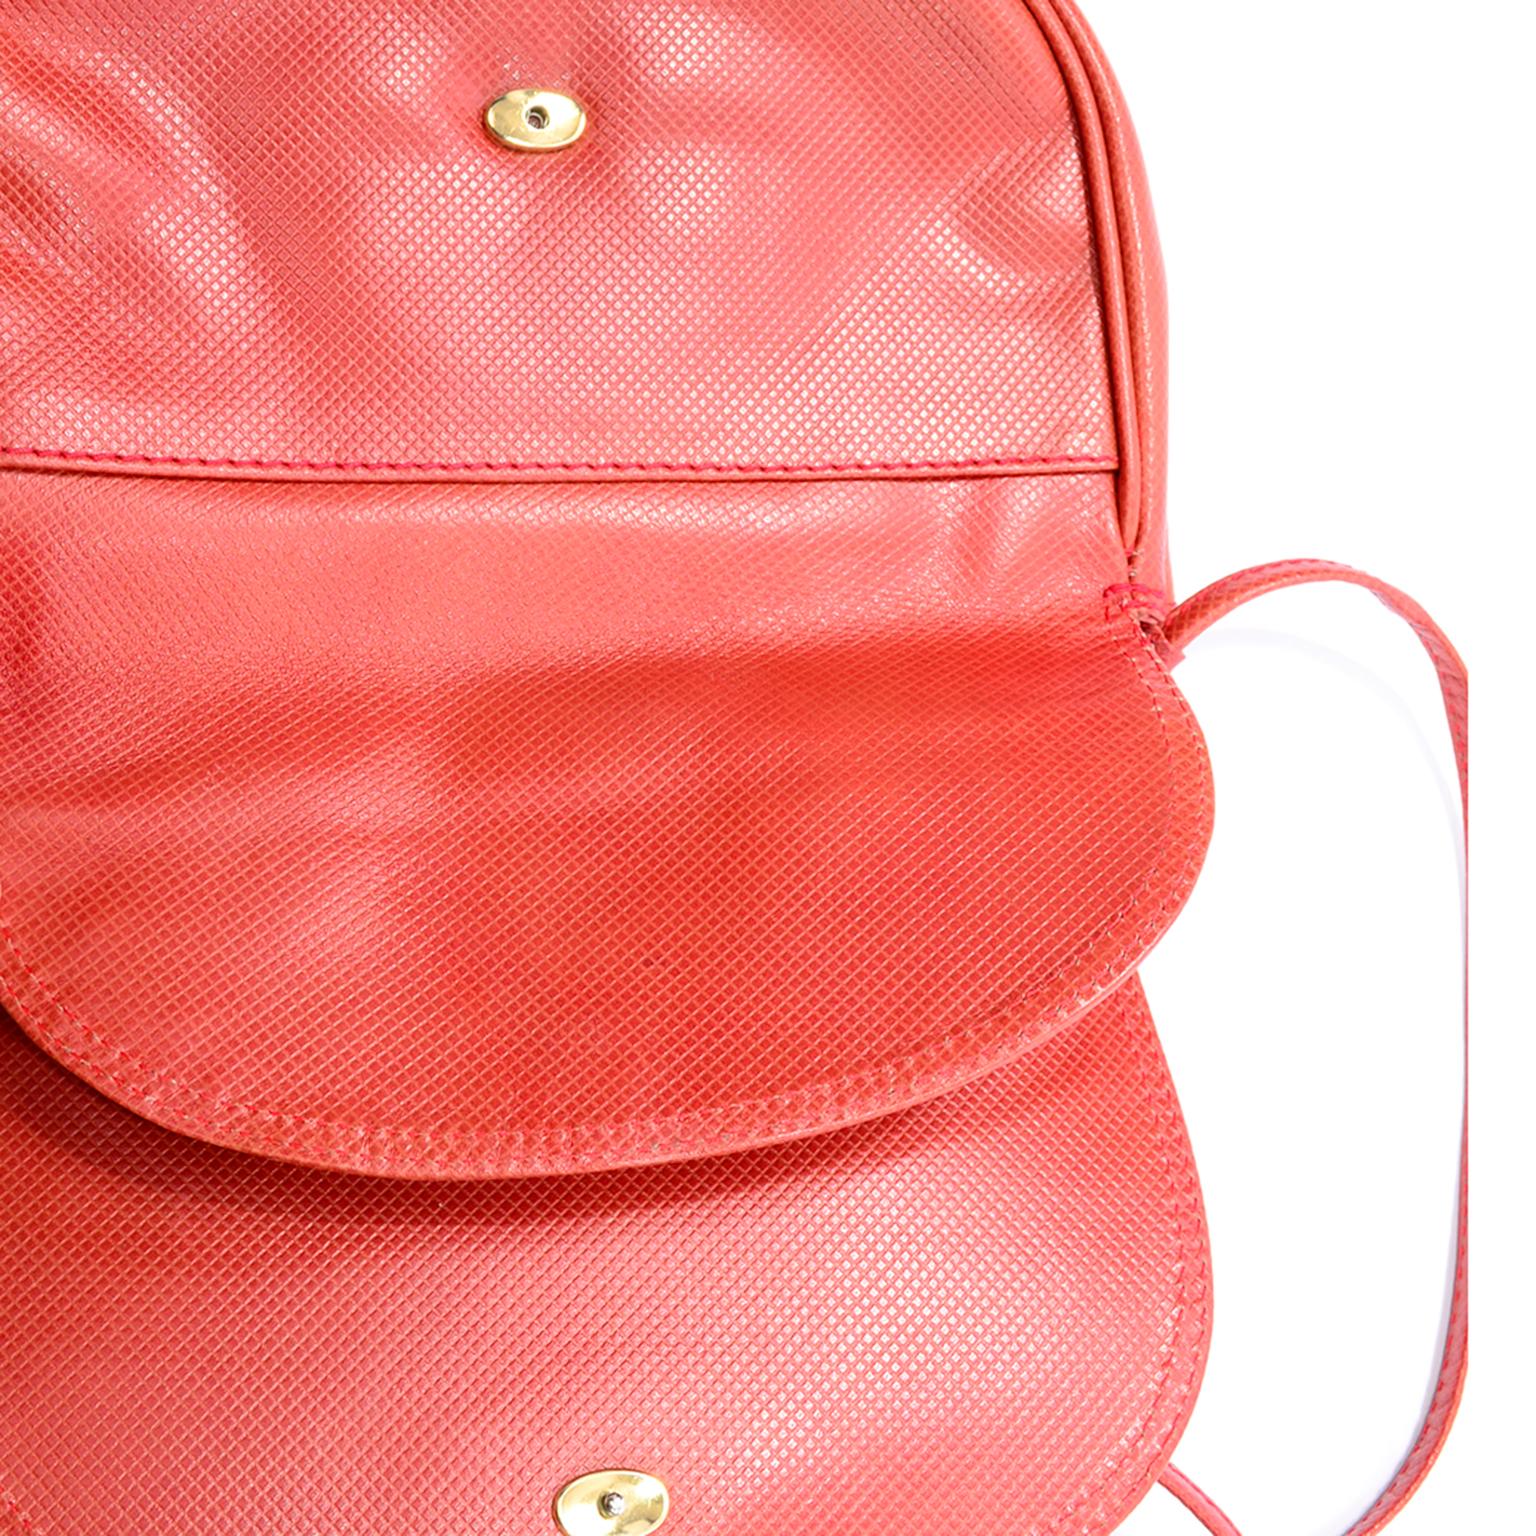 Vintage Bottega Veneta Crossbody Orange Leather Flap Bag With Shoulder Strap 2